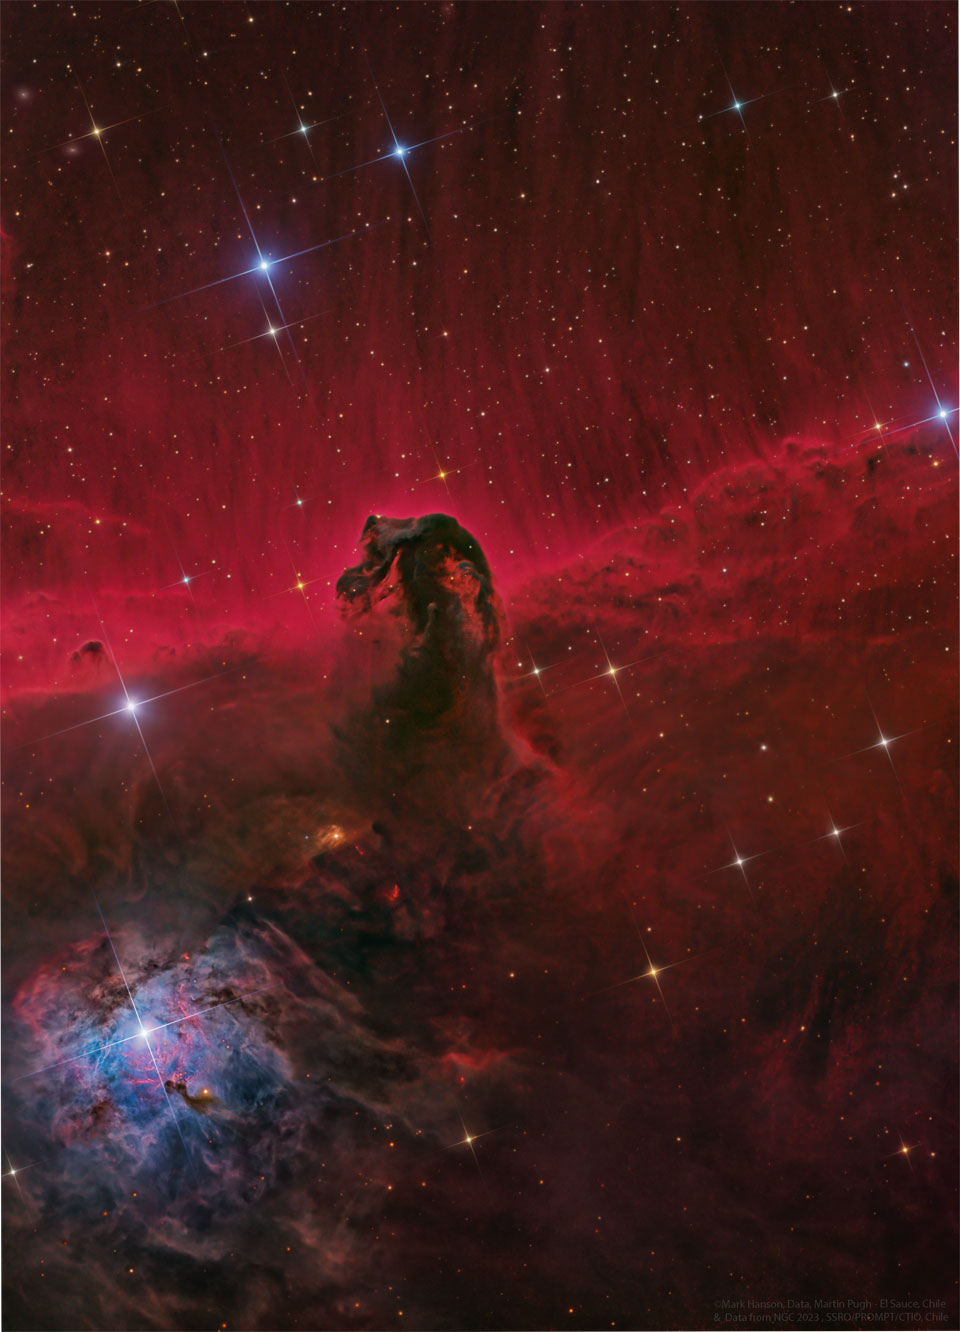 In der Bildmitte befindet sich eine dunkle Wolke, die an ein Seepferdchen erinnert, dahinter leuchtet eine rote Nebelwand, die nach oben hin in Fasern ausläuft. Übers Bild sind Sterne mit Zacken verteilt.